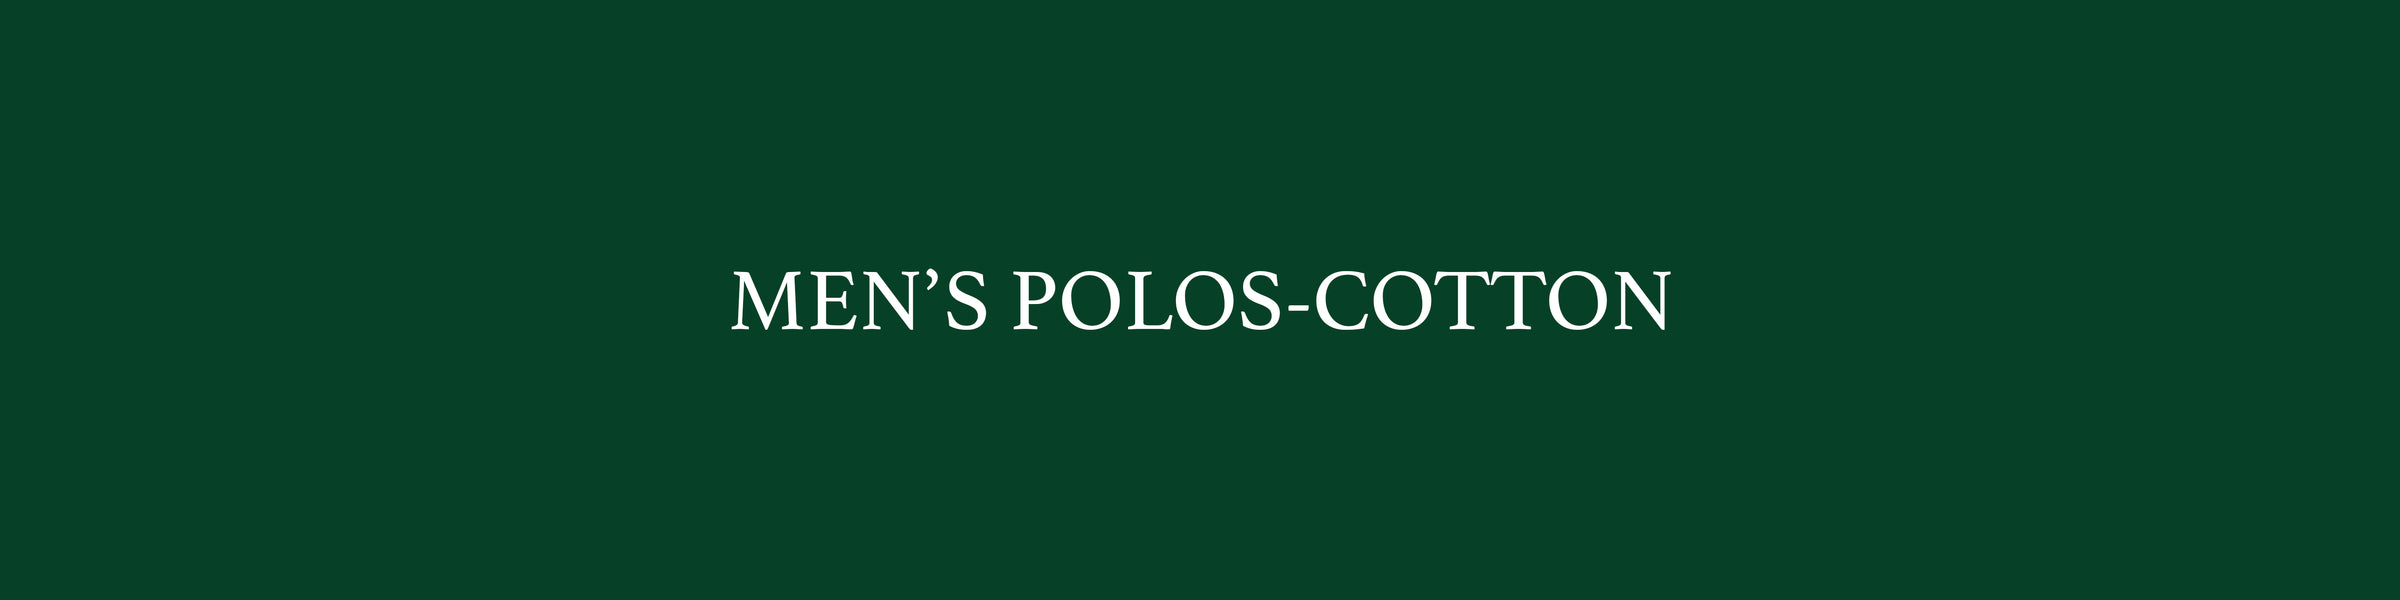 Men's Polos - Cotton